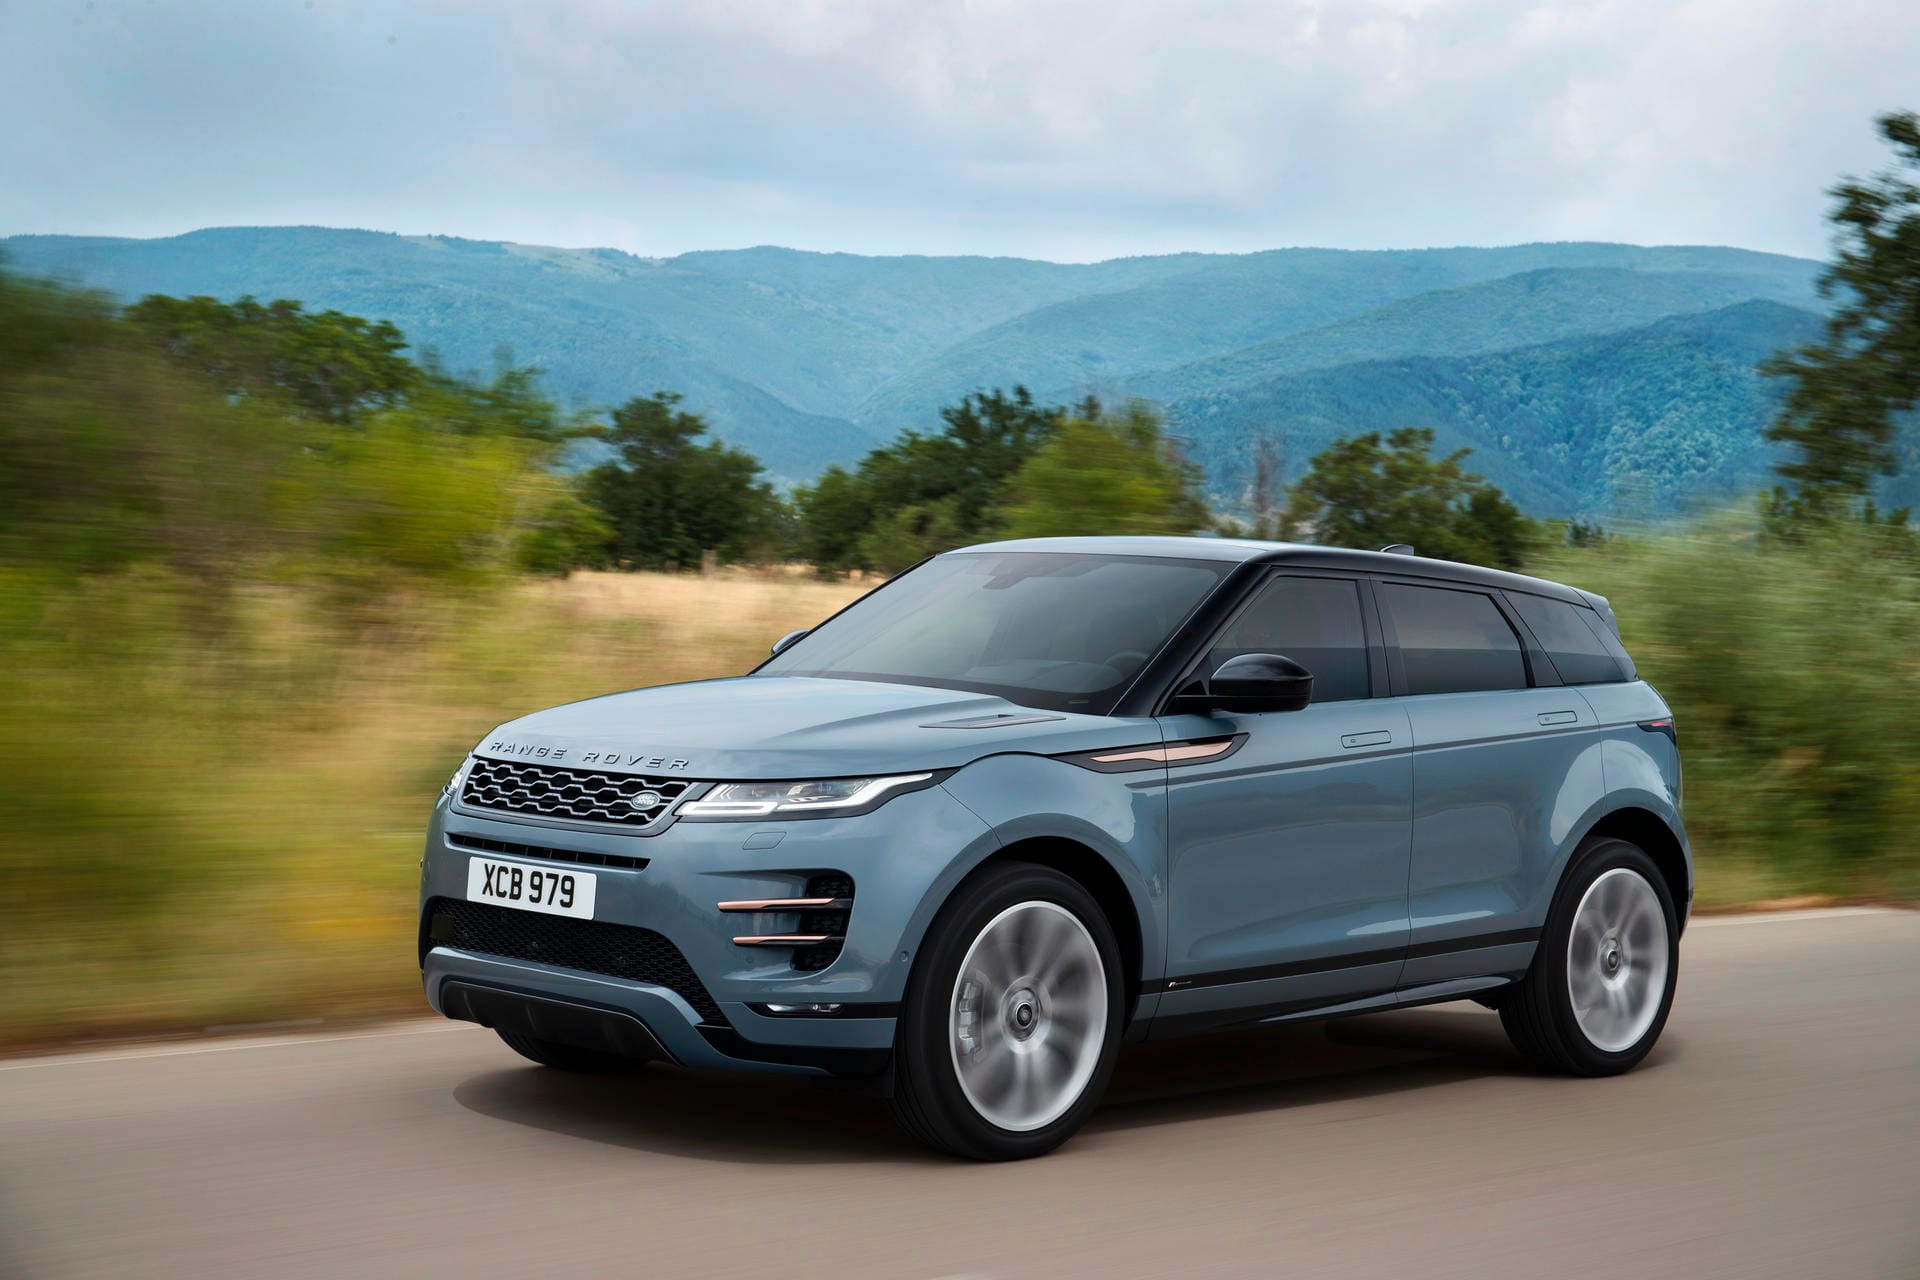 Angetrieben wird der Range Rover Evoque von Vierzylinder-Benzinern und -Dieseln, die ein Leistungsspektrum von 150 PS bis 300 PS abdecken.